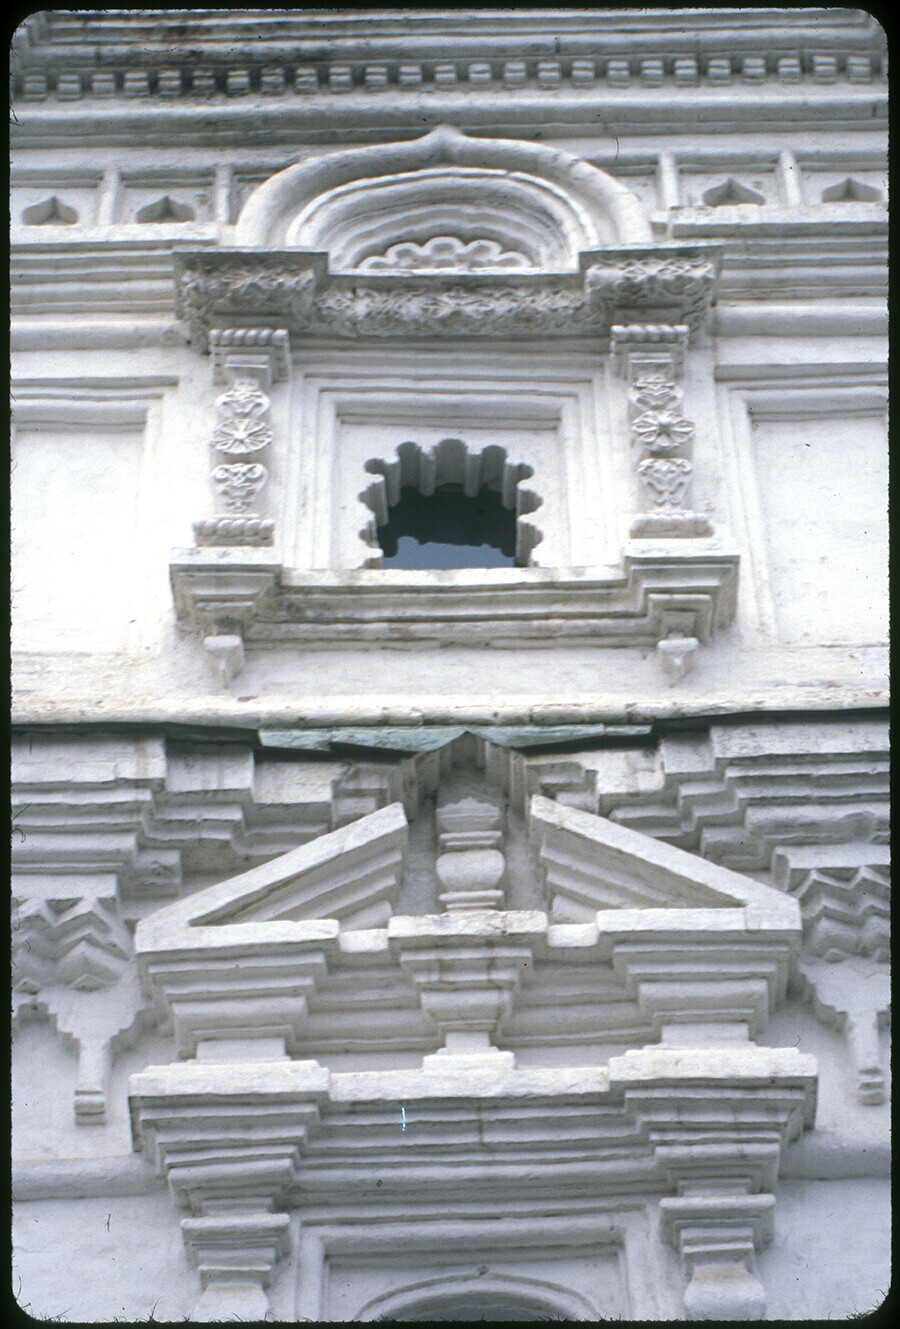 Couvent de la Trinité. Clocher, église de l'icône de la Vierge de Kazan, façade sud. Détails décoratifs des fenêtres. 26 octobre 2001